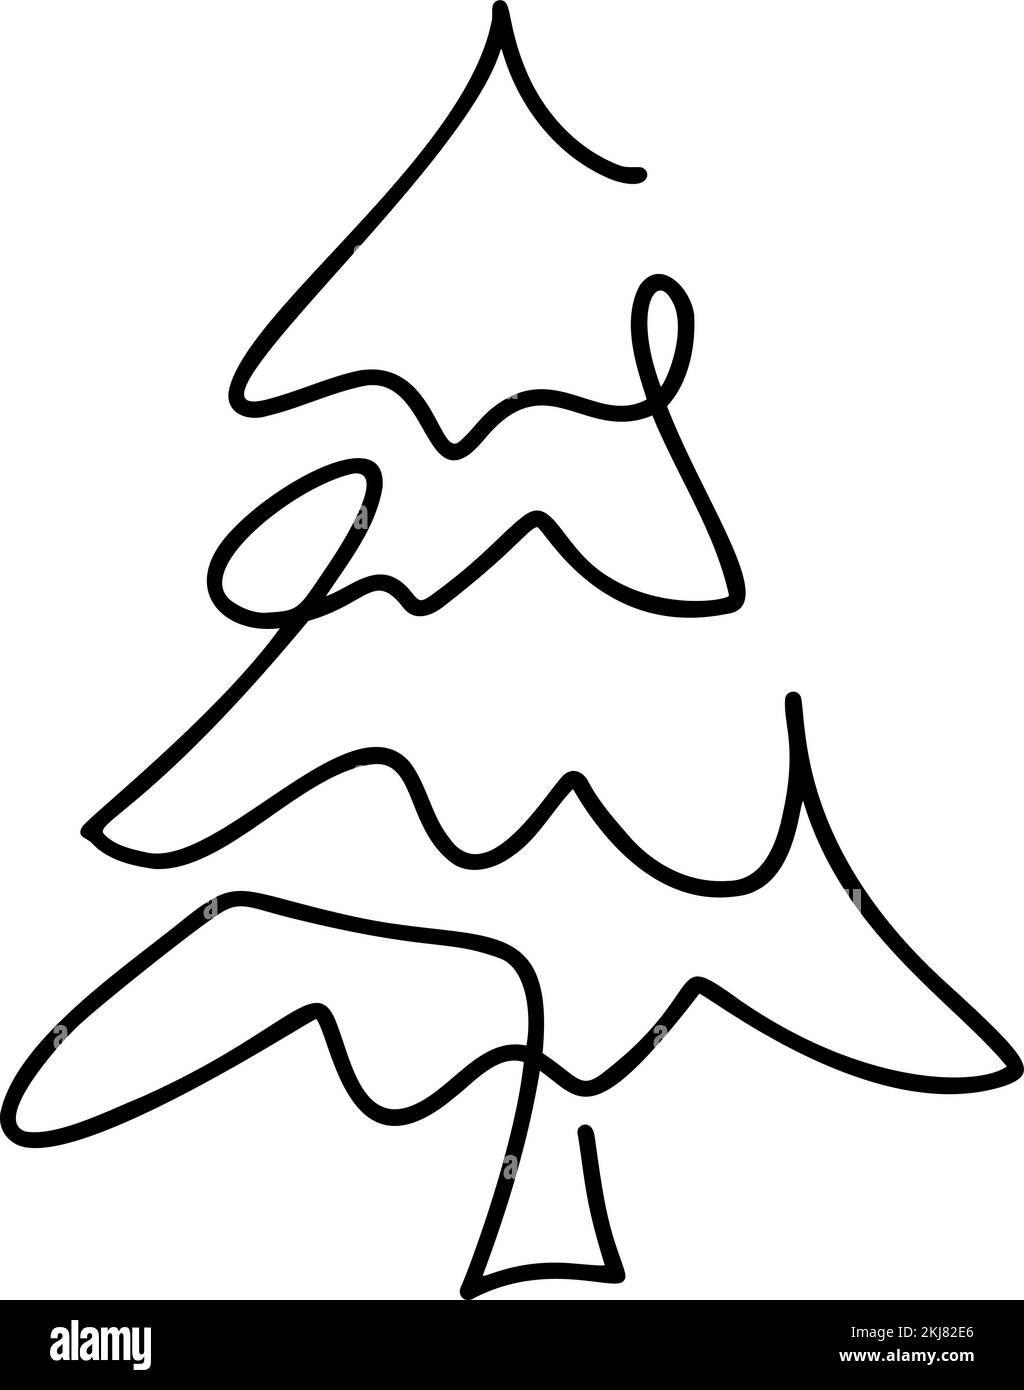 Vektor Weihnachtsfieber Baumkunst. Durchgehende einzeilige Pinie. Illustration minimalistisches Design für das Konzept „Weihnachten und Neujahr“ Stock Vektor